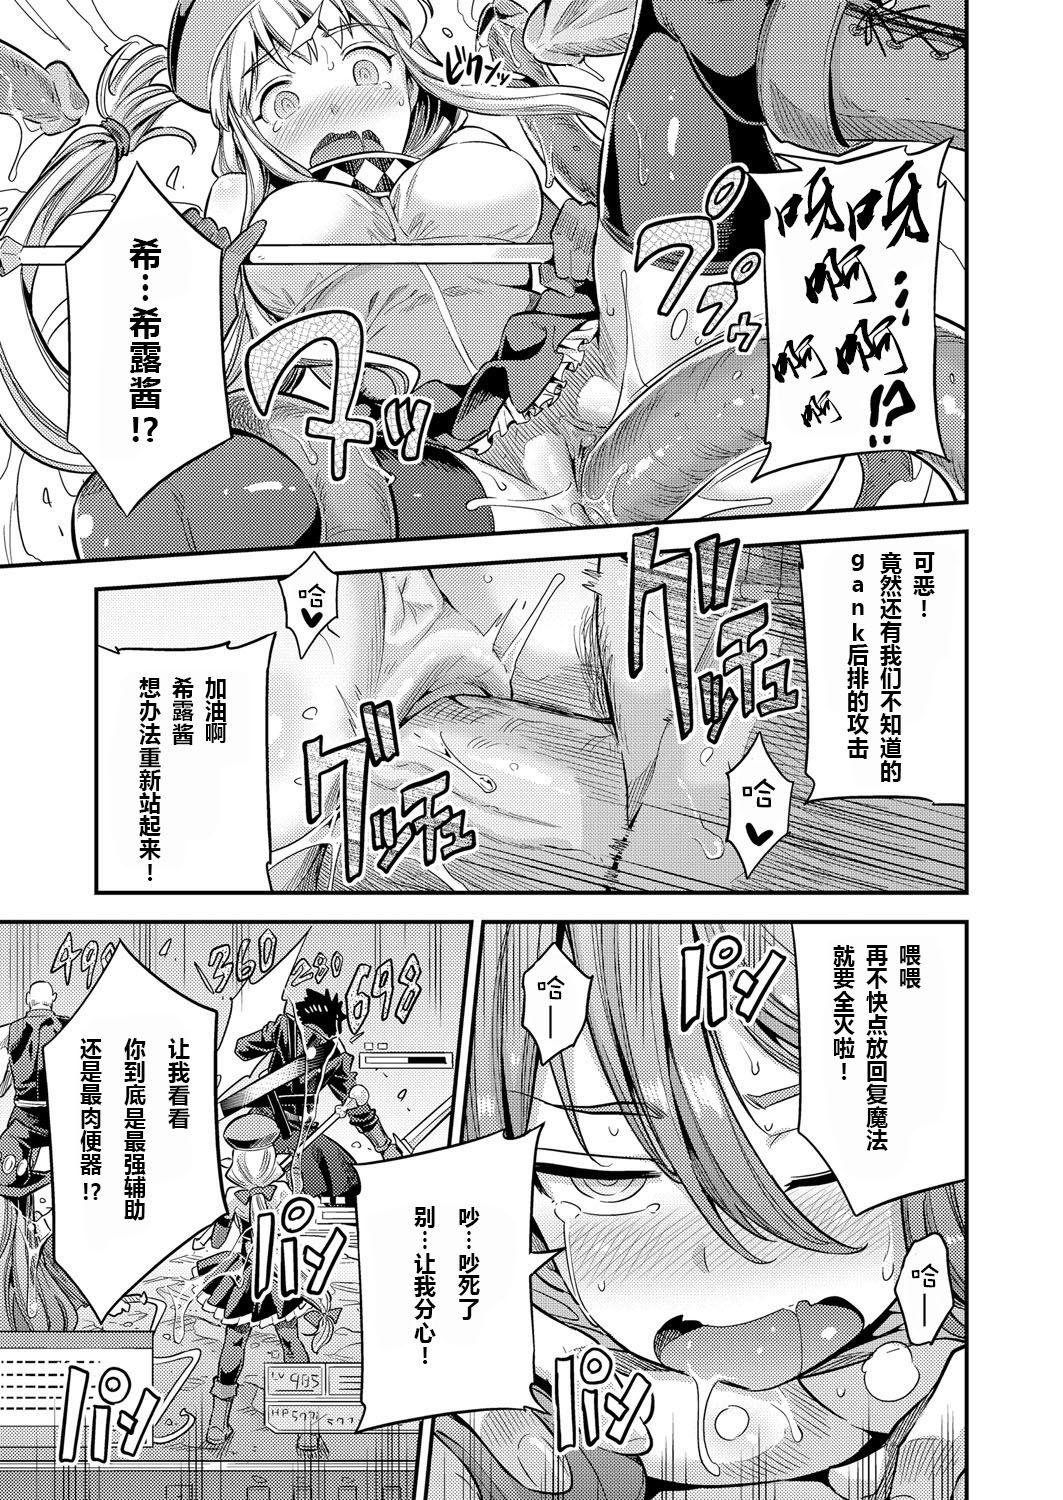 Amante Watashi ga Ittara Mina Shinjau Netoge Haijin wa Tanetsuke Rape saretemo Te ga Hanasenain desu Ghetto - Page 11